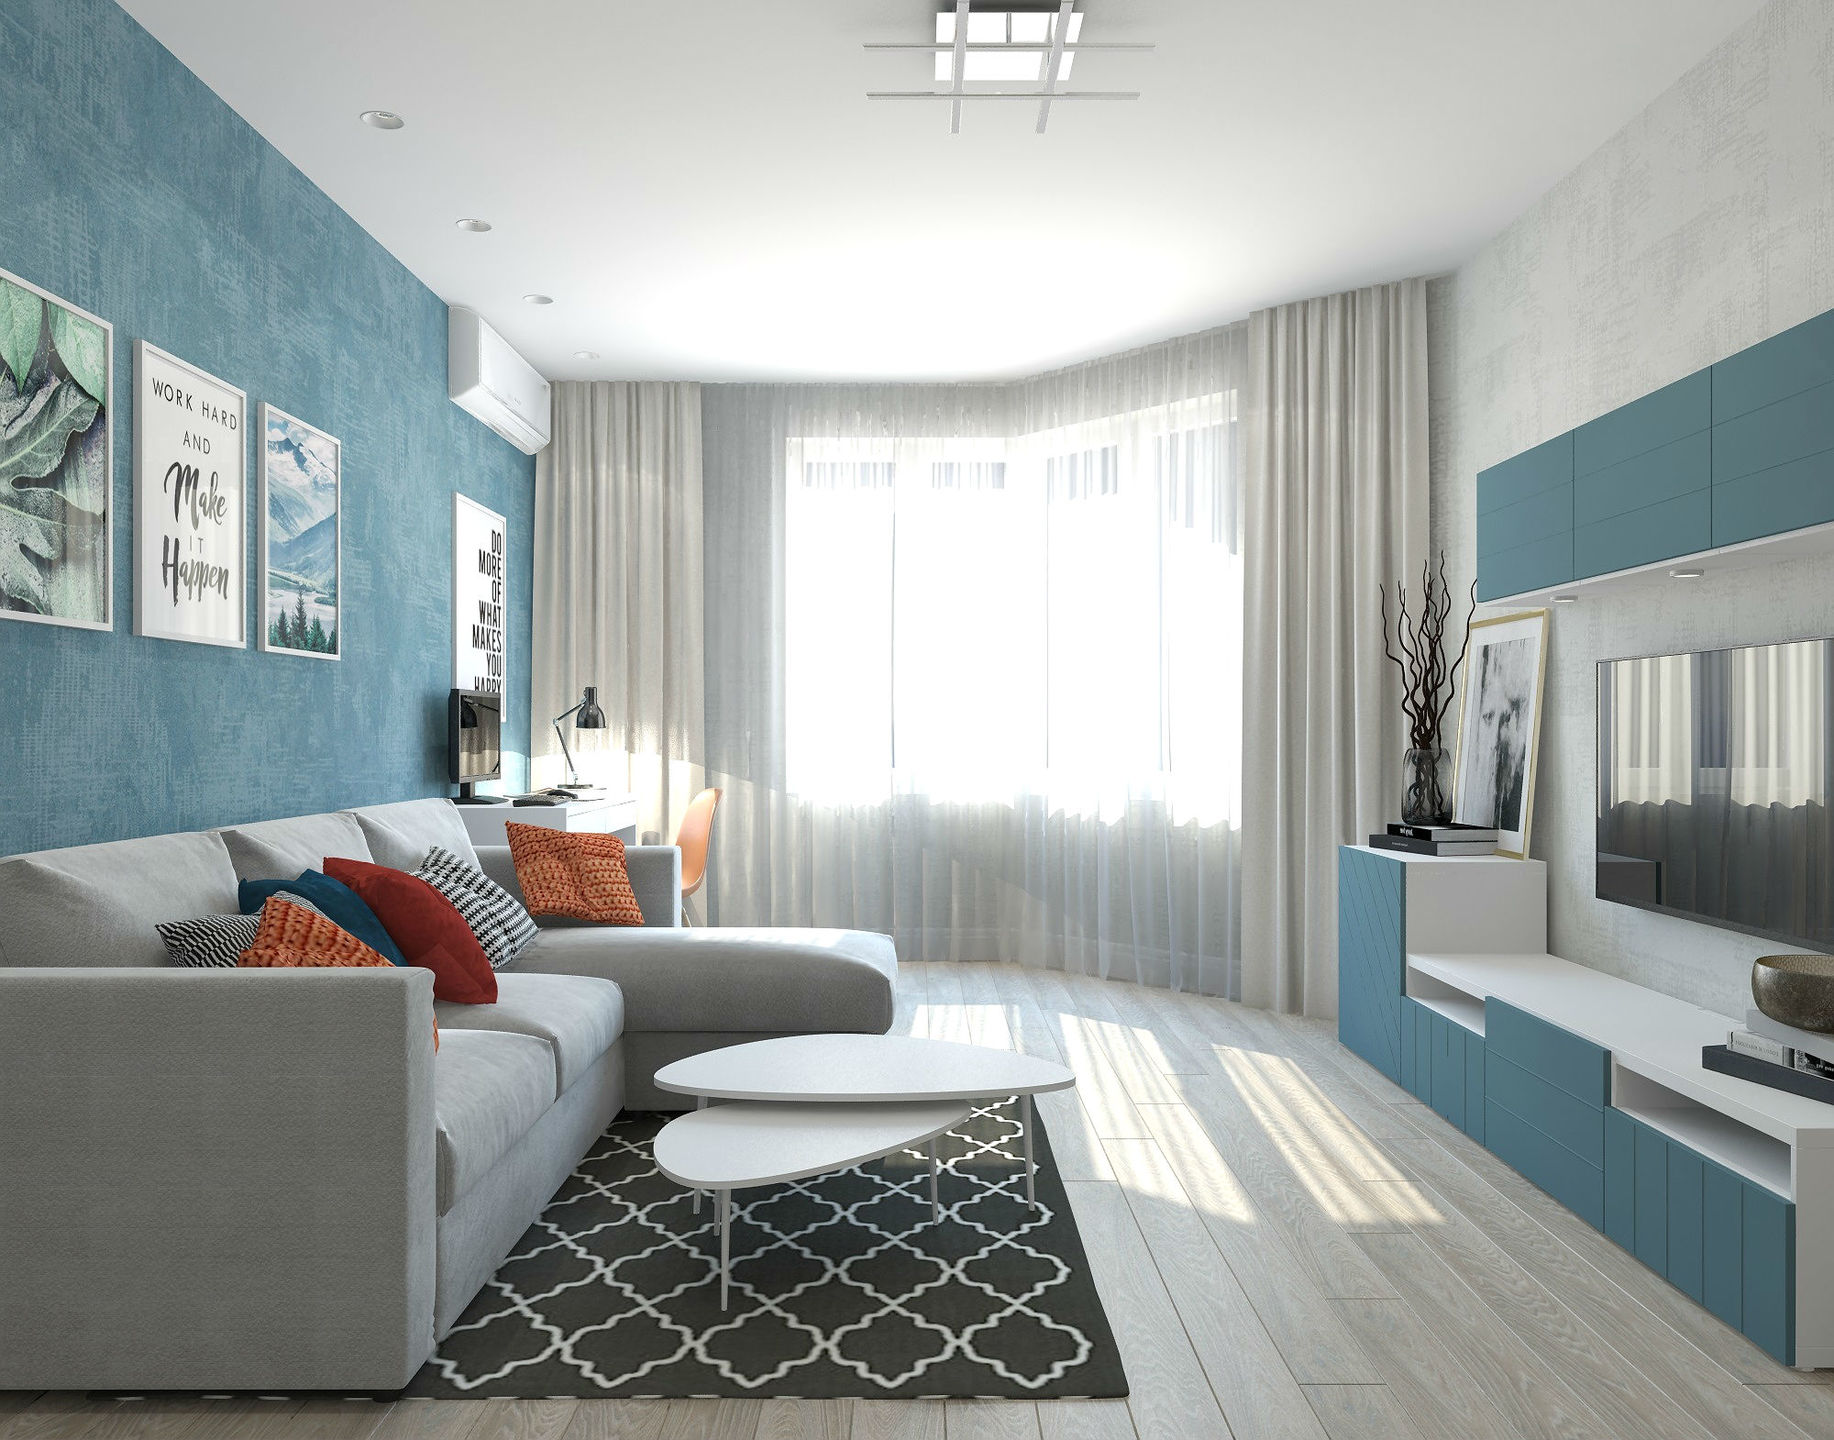 Дизайн двухкомнатной квартиры 44 кв м - 75 фото проектов интерьера